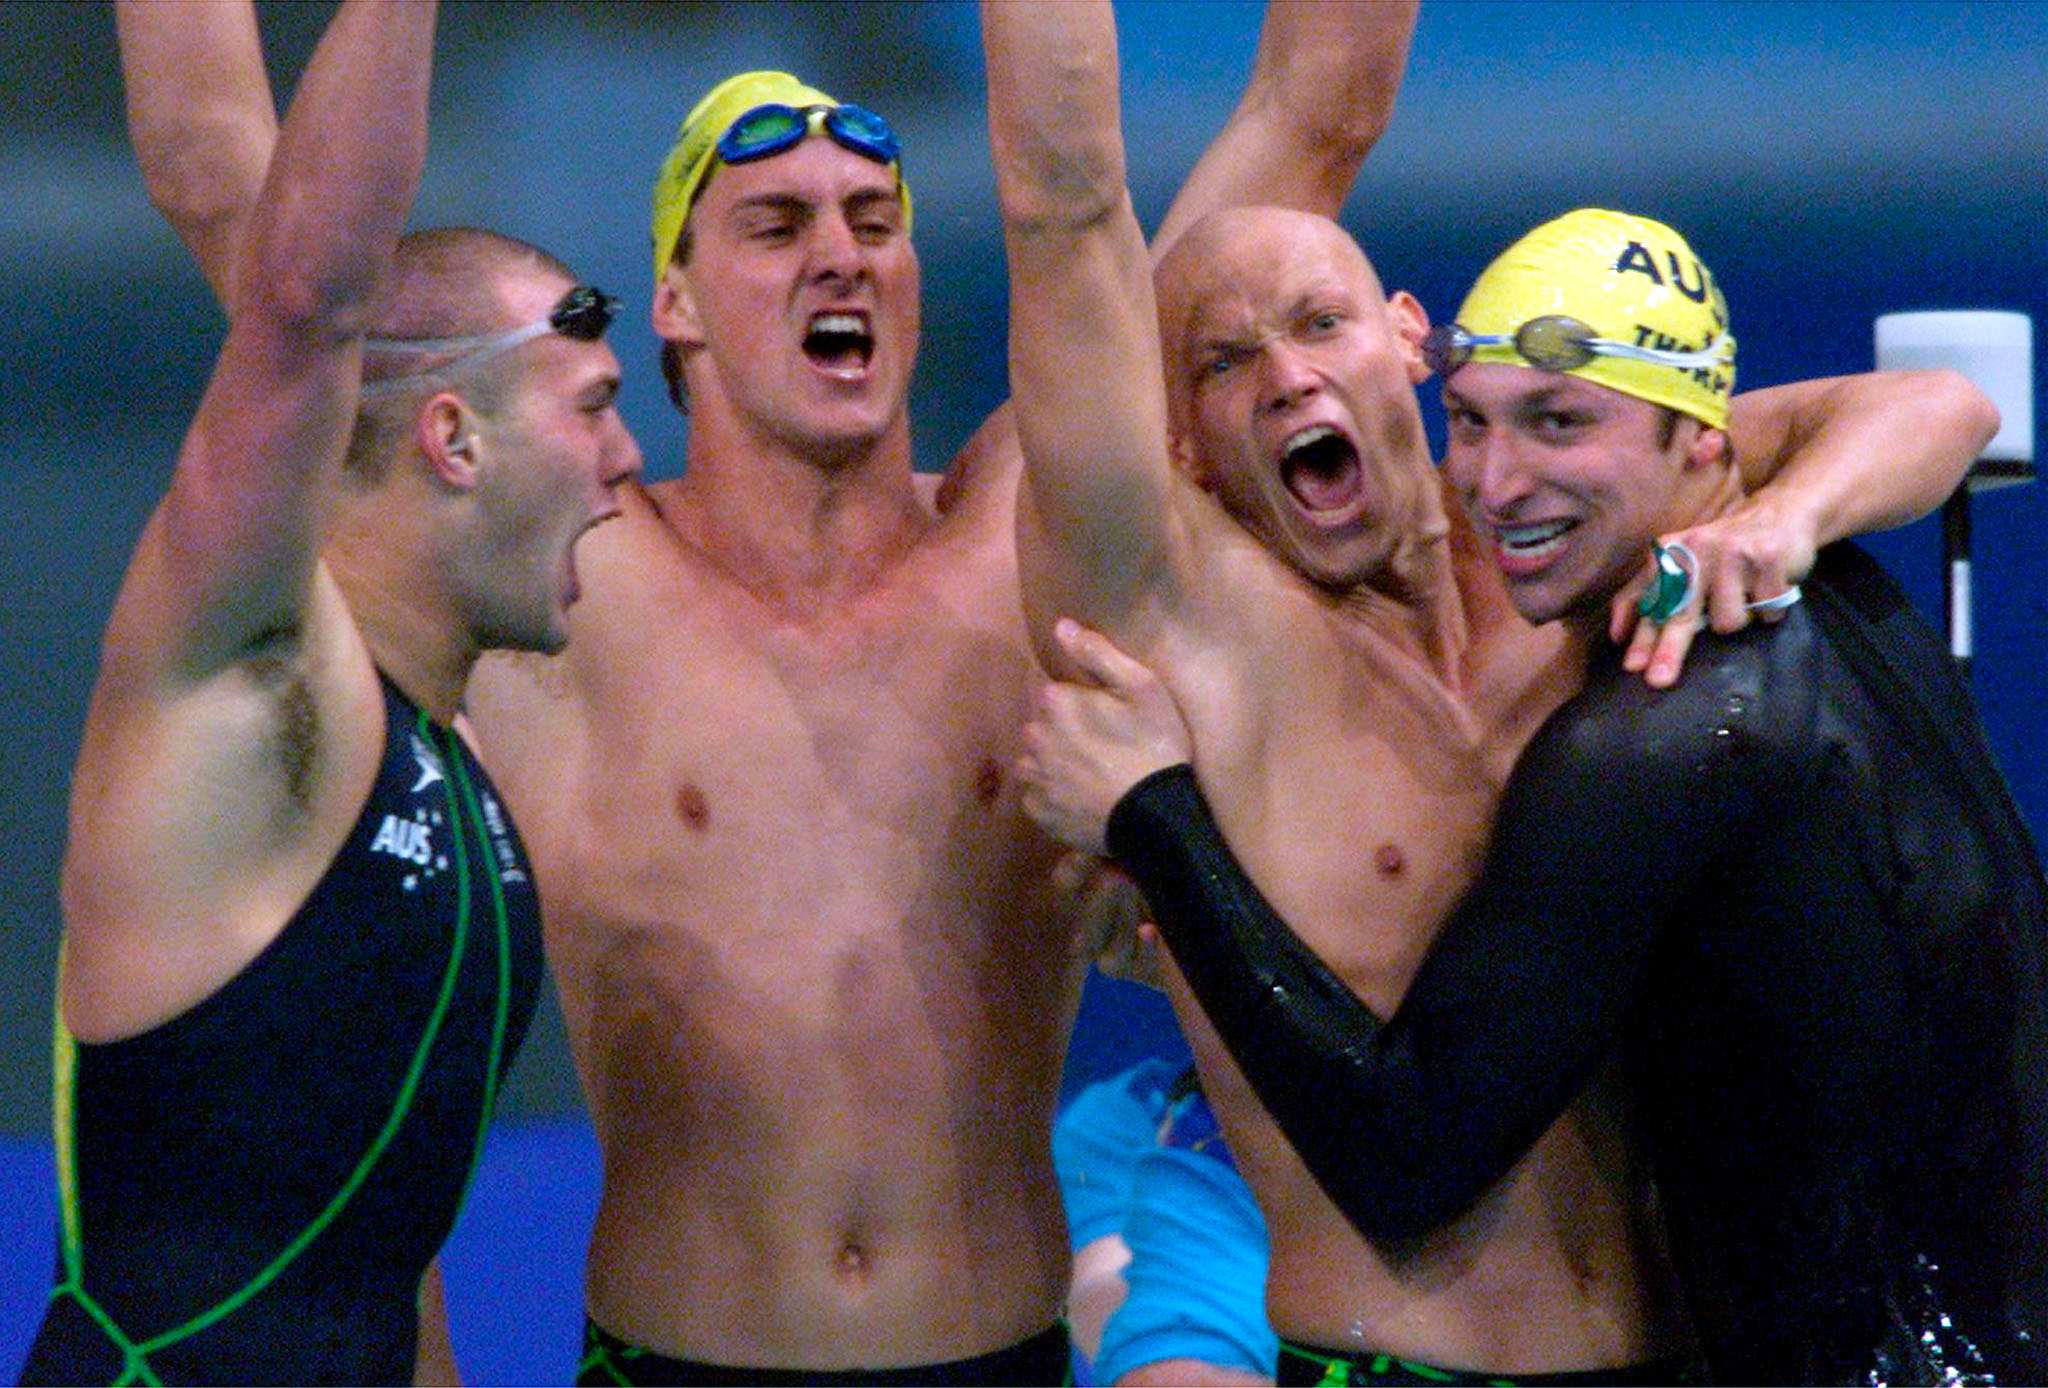 游泳接力队在赢得奥运金牌后挥舞着空气，在障碍赛中欢呼雀跃。